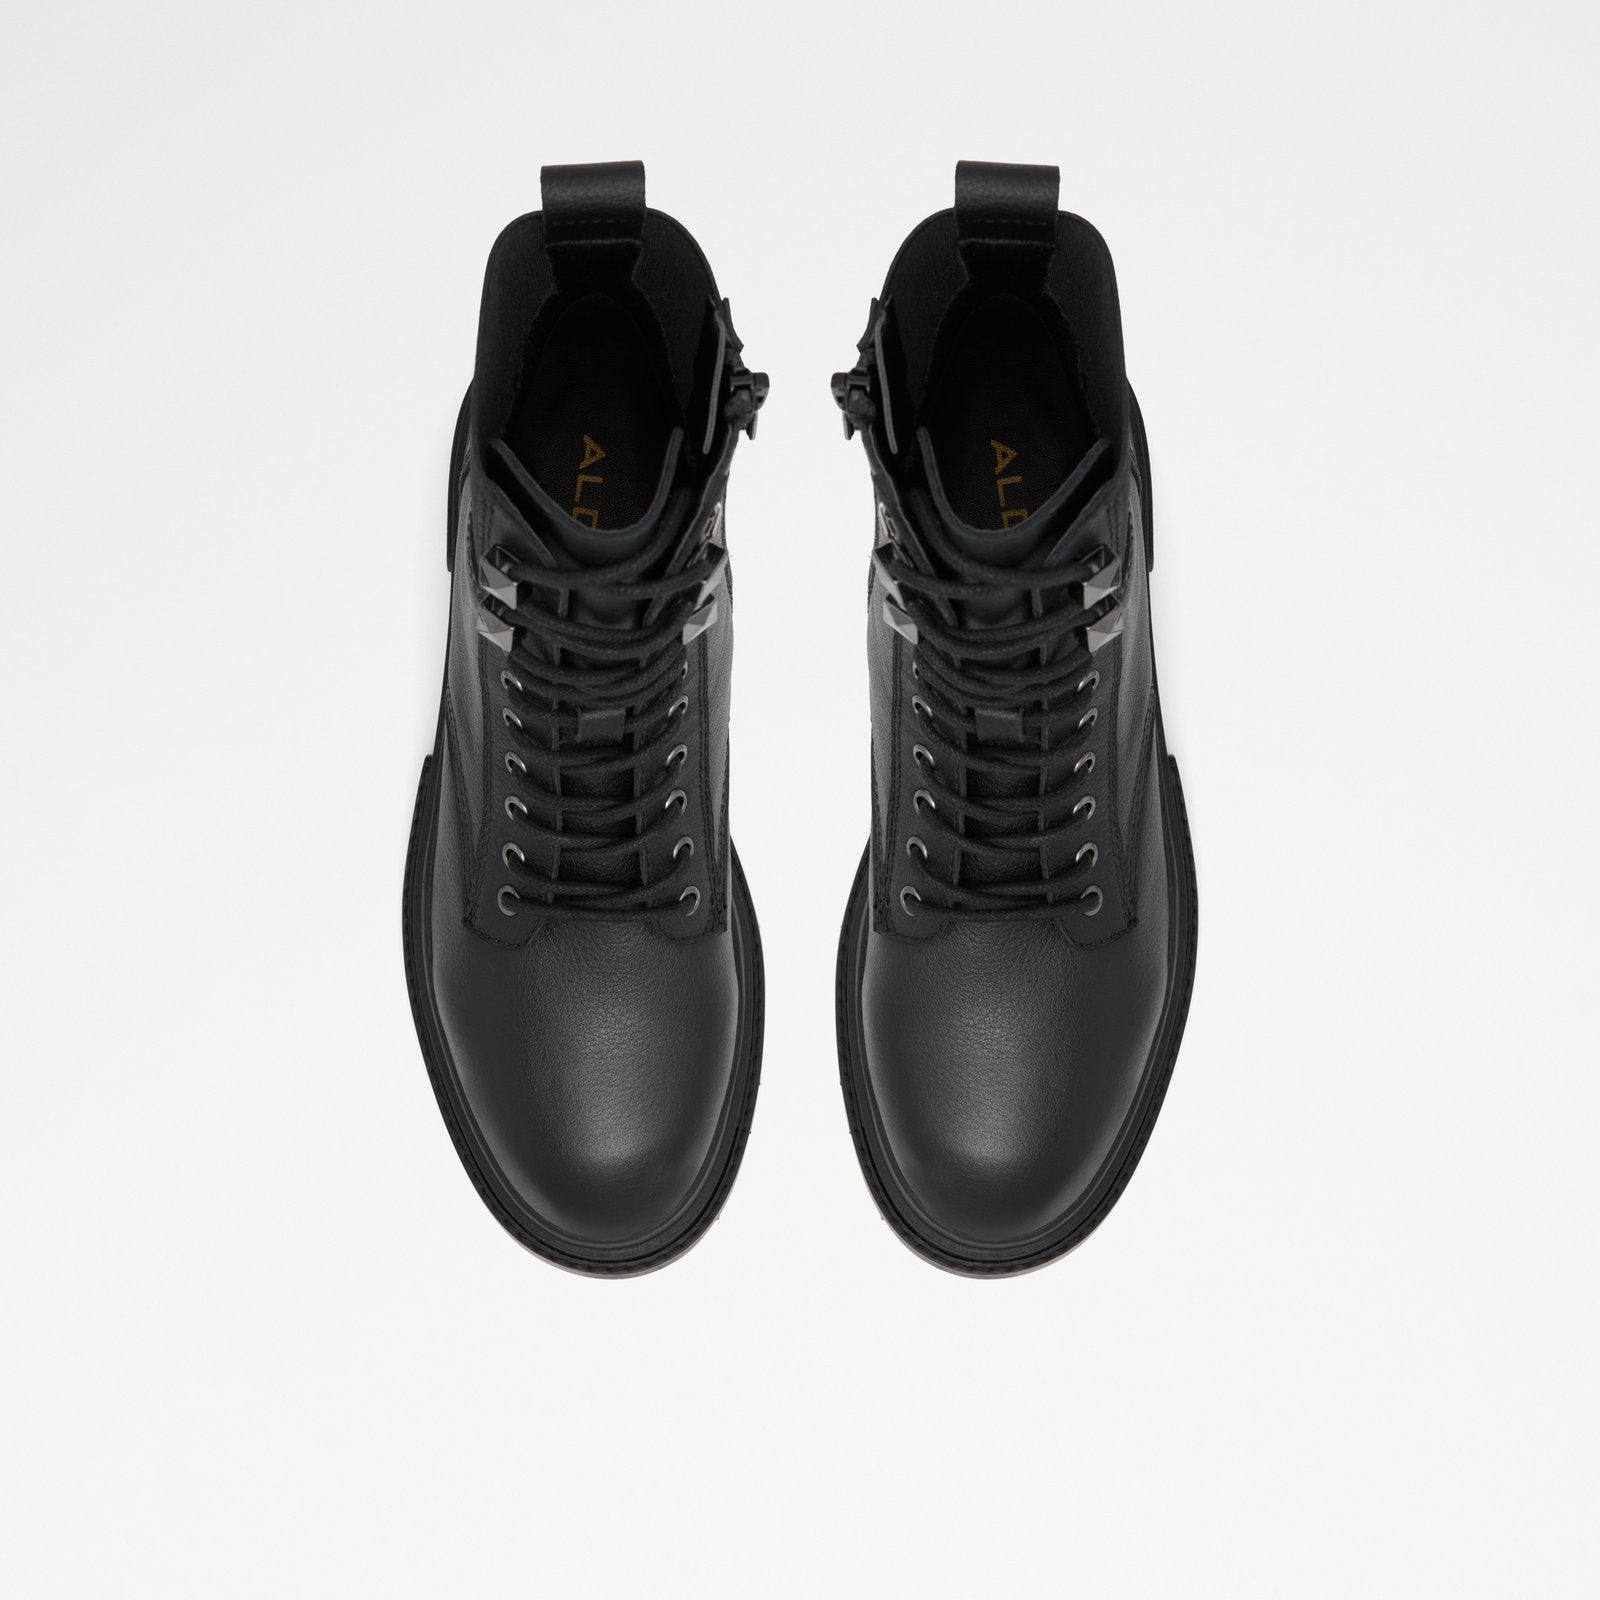 Leap Women Shoes - Black - ALDO KSA